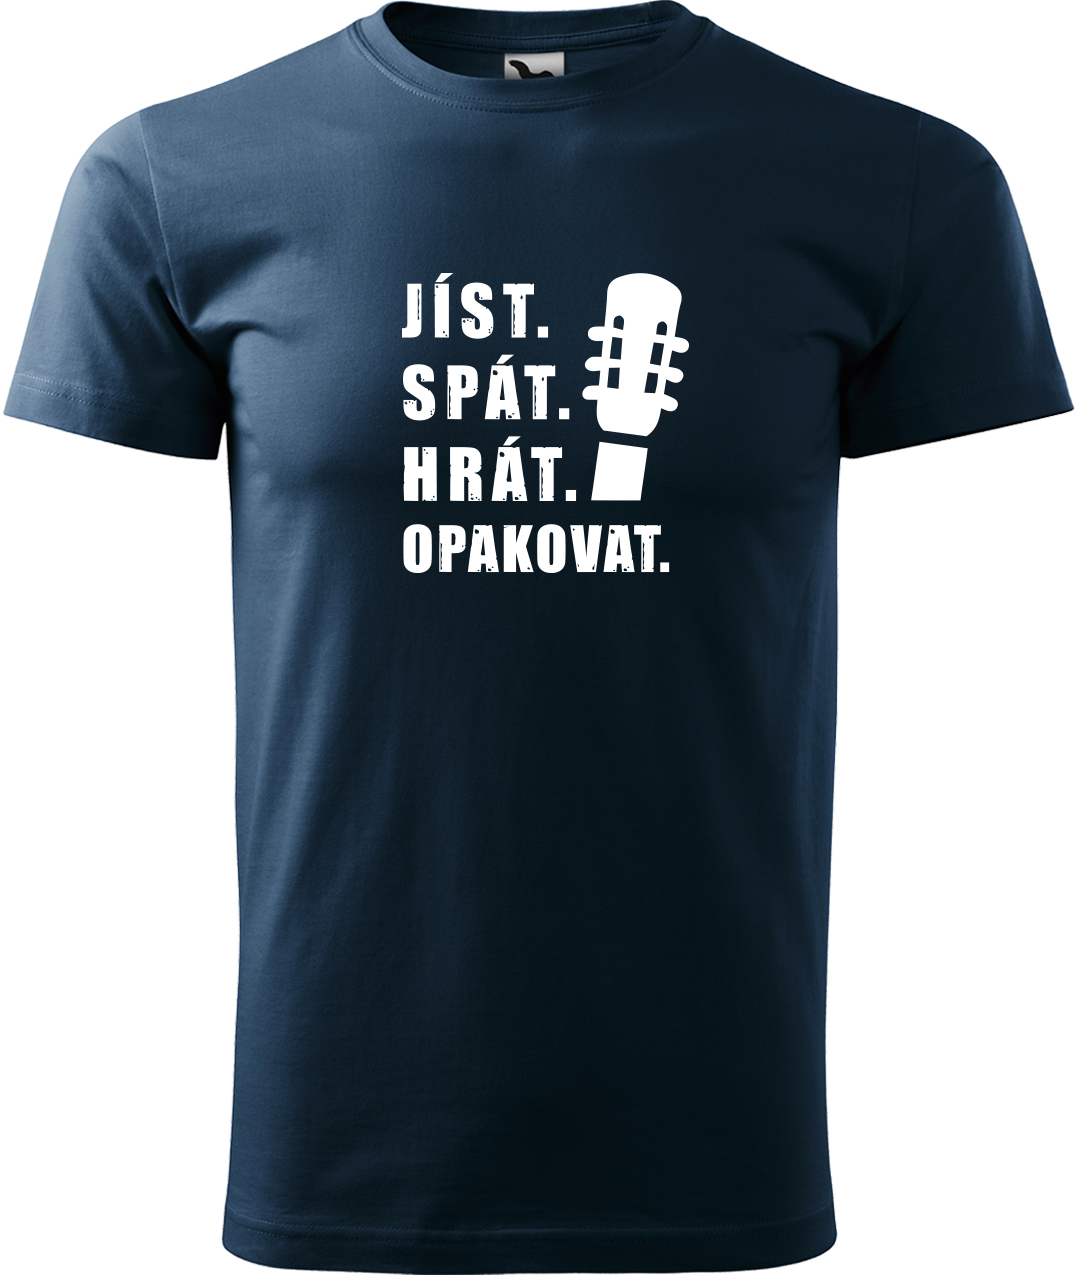 Pánské tričko s kytarou - Jíst, spát, hrát, opakovat. Velikost: L, Barva: Námořní modrá (02), Střih: pánský